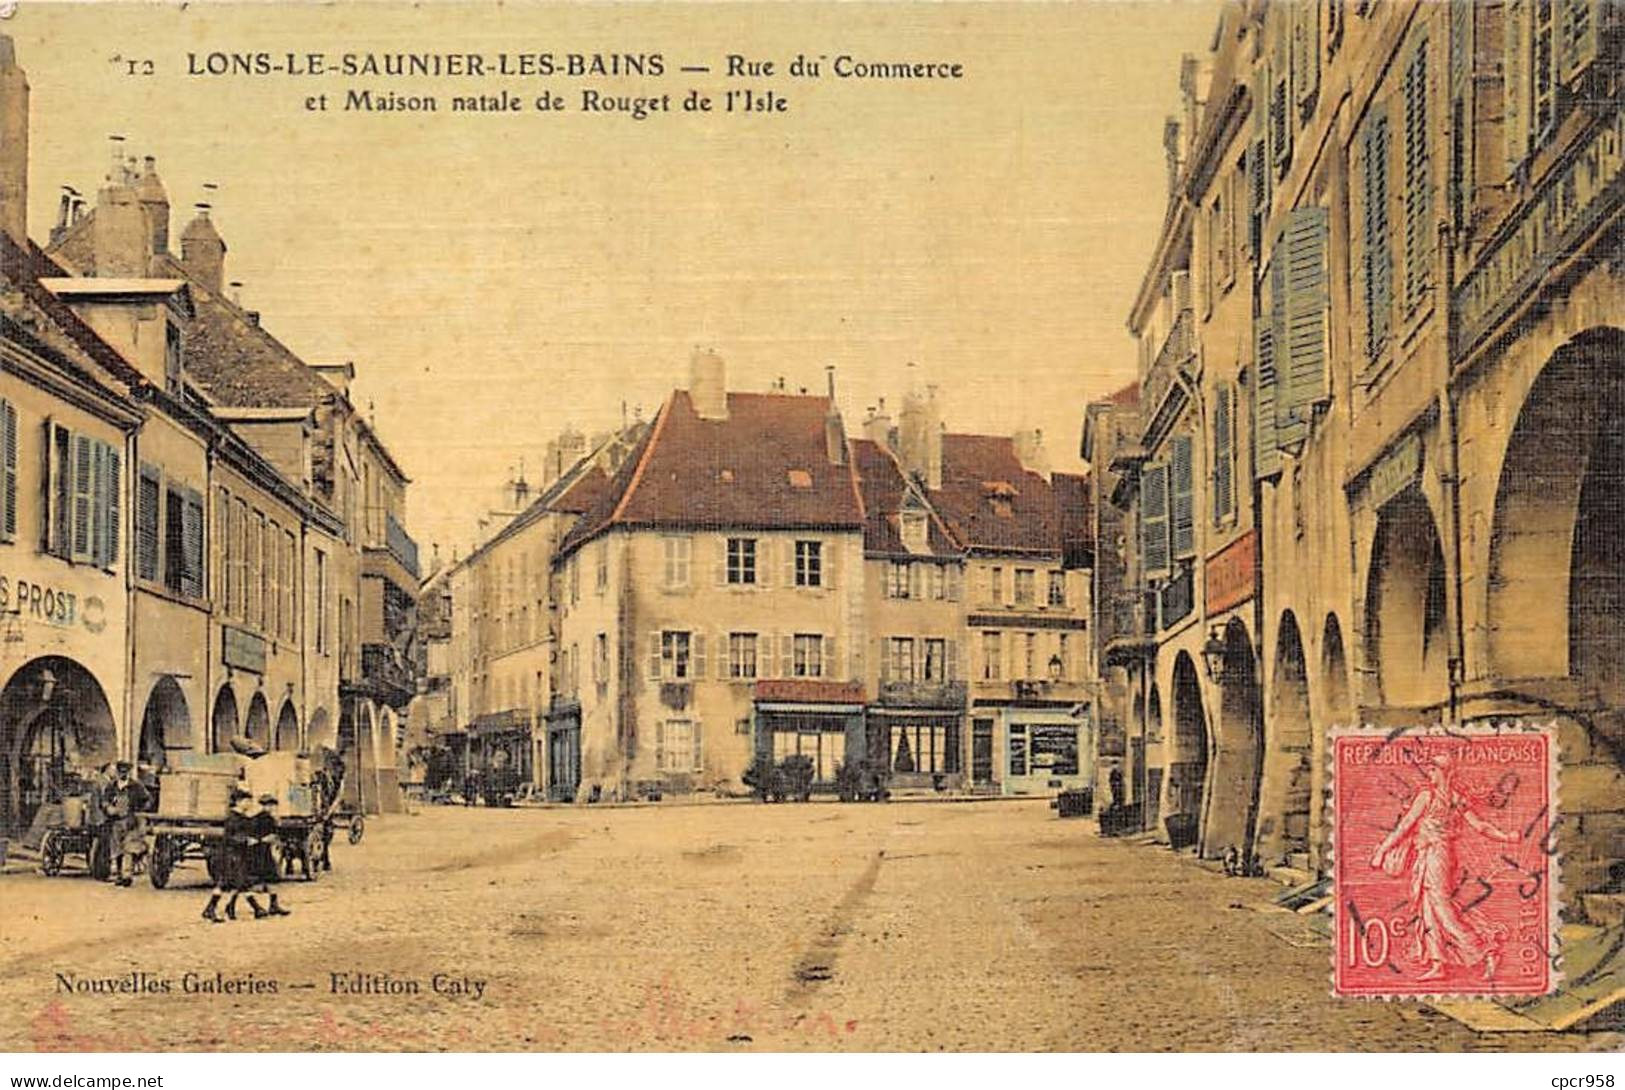 39 - LONS LE SAUNIER LES BAINS - SAN46217 - Rue Du Commerce Et Maison Natale De Rouget De L'Isle - Lons Le Saunier